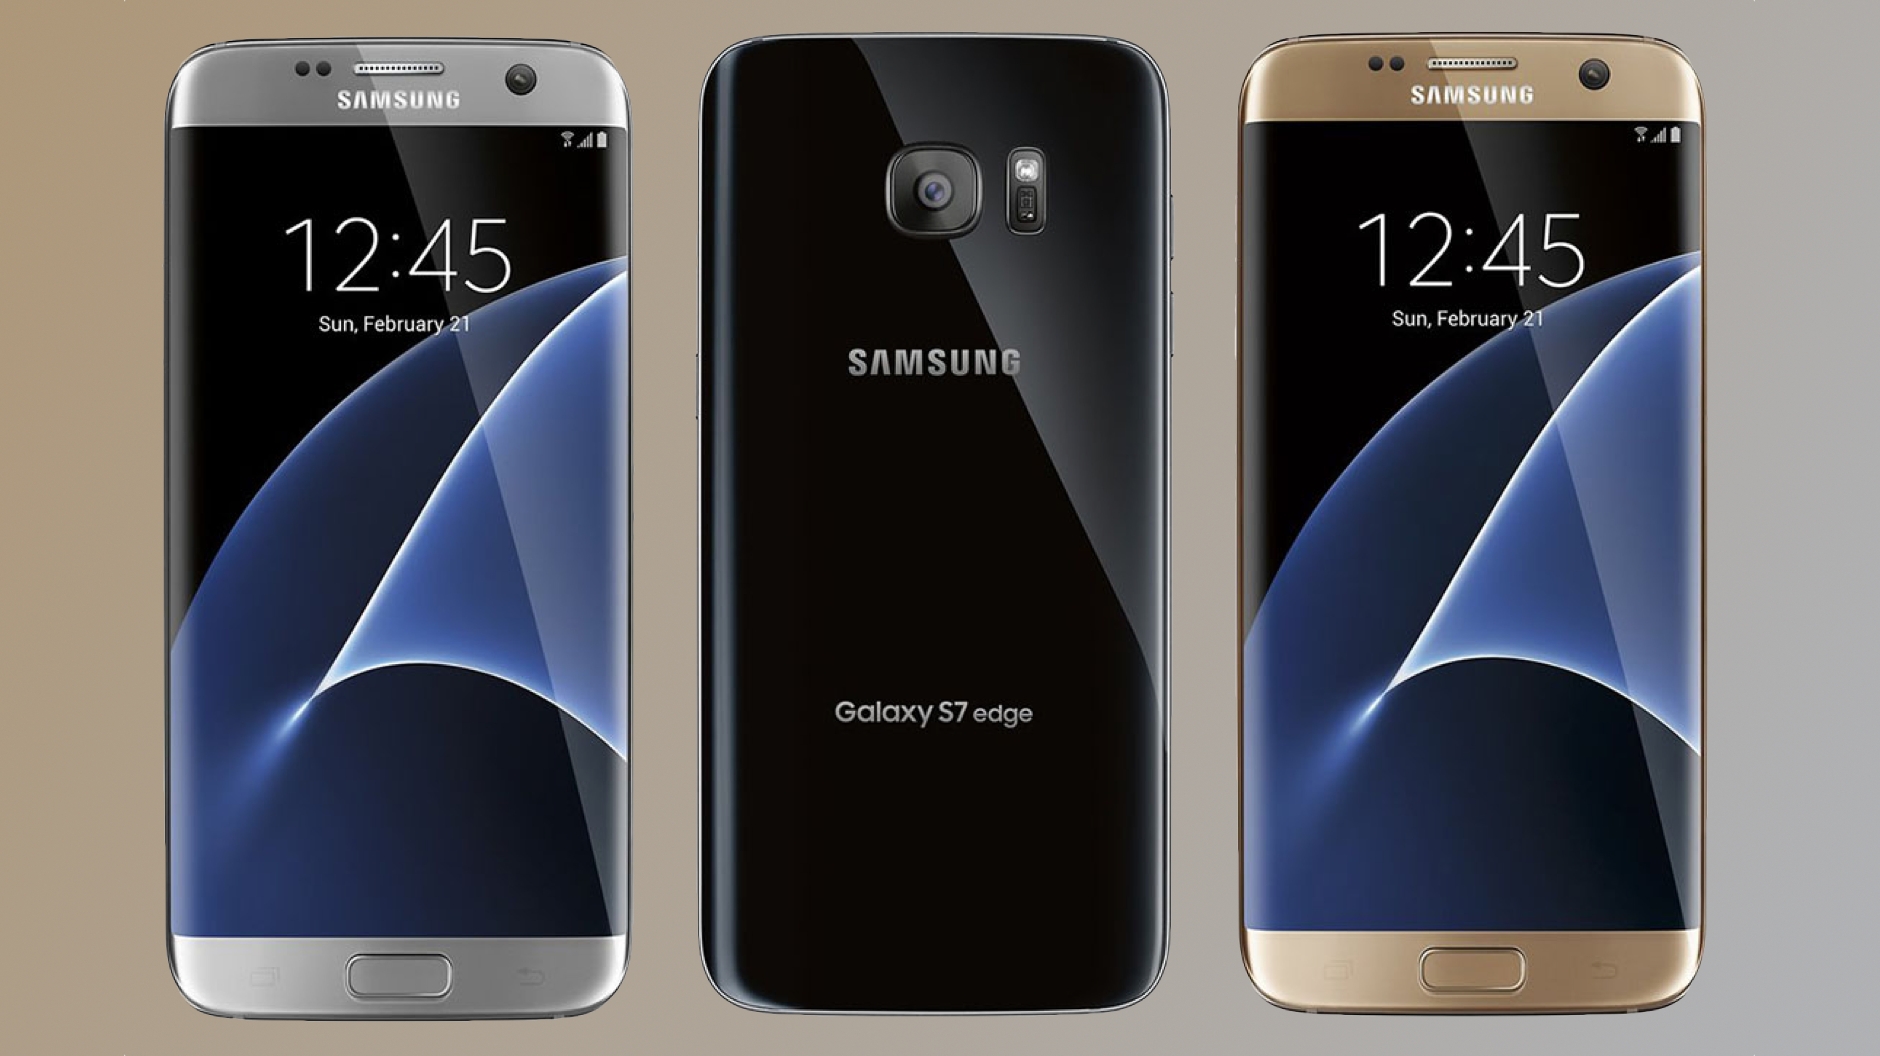 Geleend Norm Vermoorden Samsung Galaxy S7 ontvangt spoedig Samsung Experience UI - Telefoon.nl